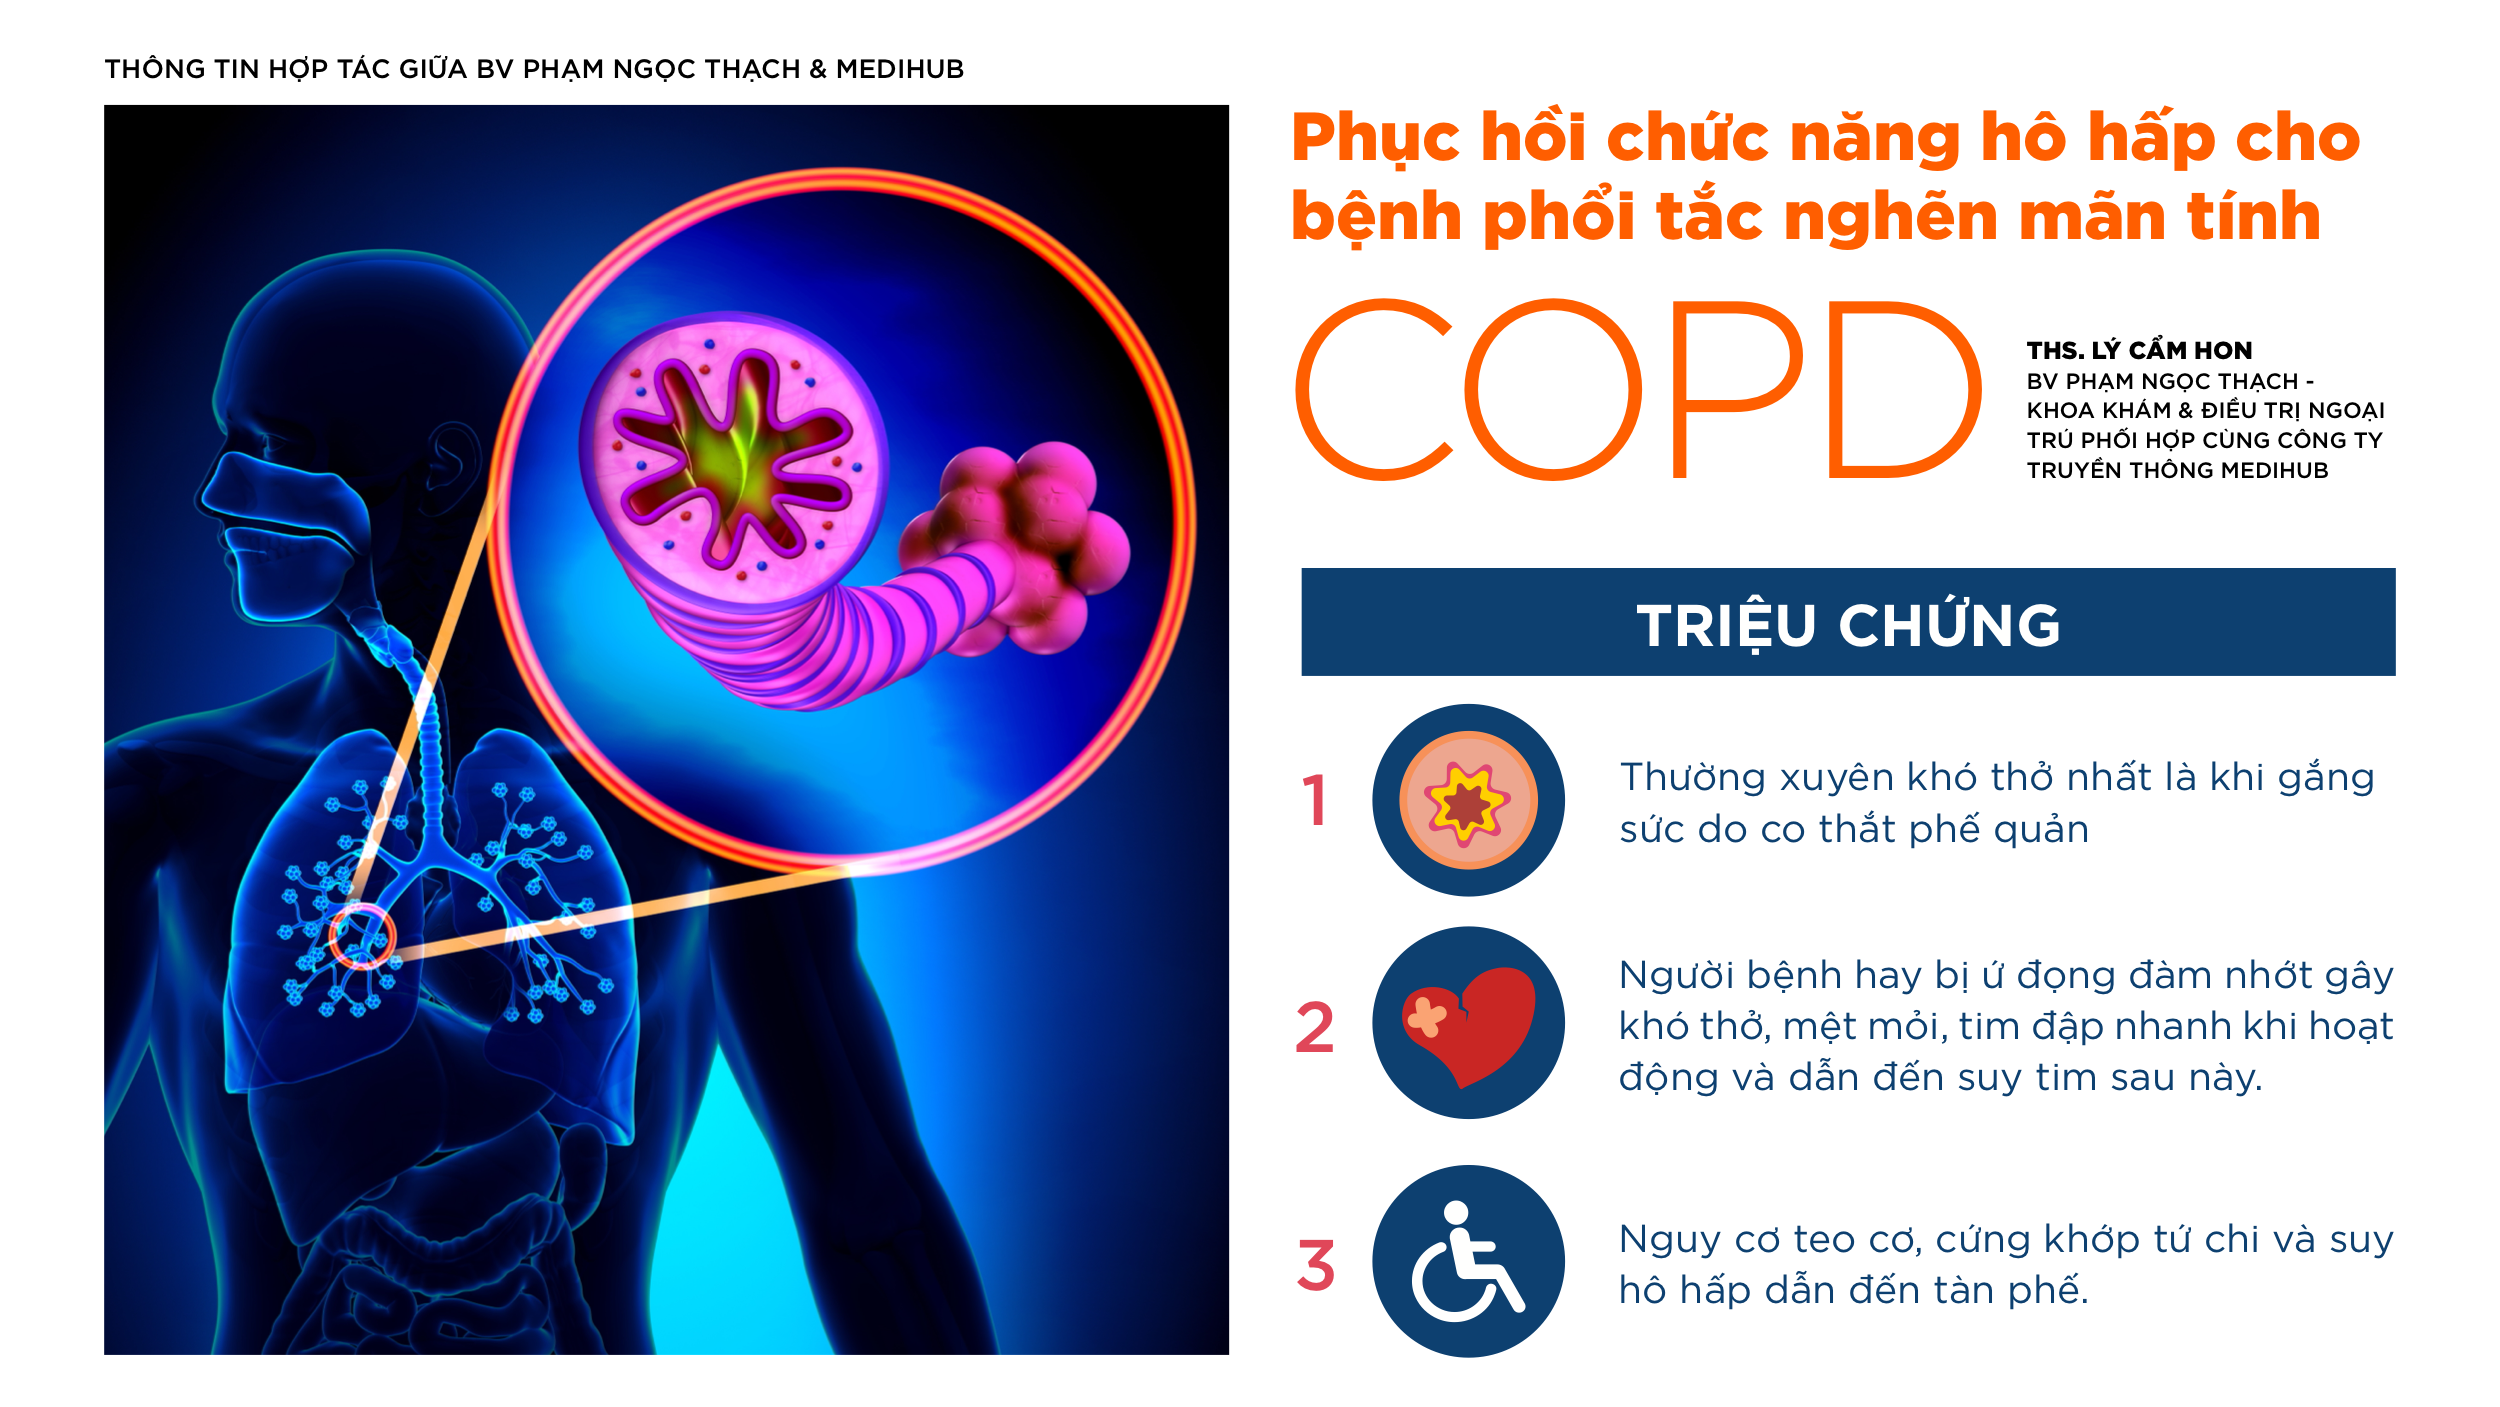 Phục hồi chức năng hô hấp cho bệnh phổi tắc nghẽn mãn tính (COPD)